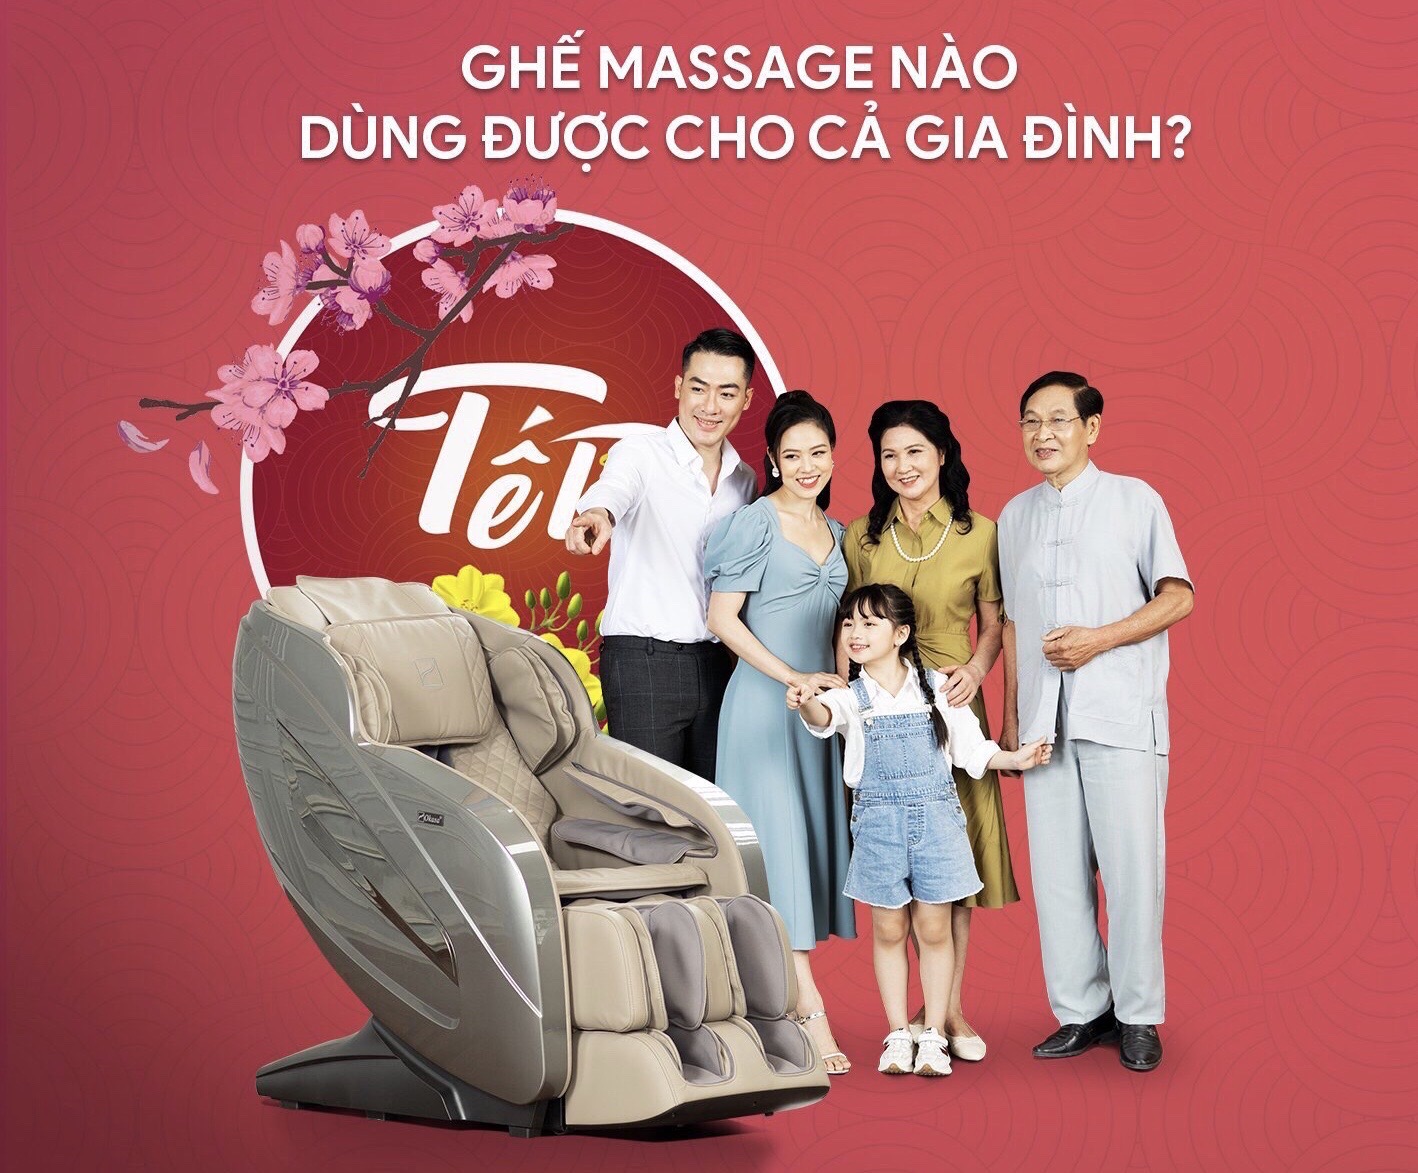 Ghế massage nào dùng được cho cả gia đình?